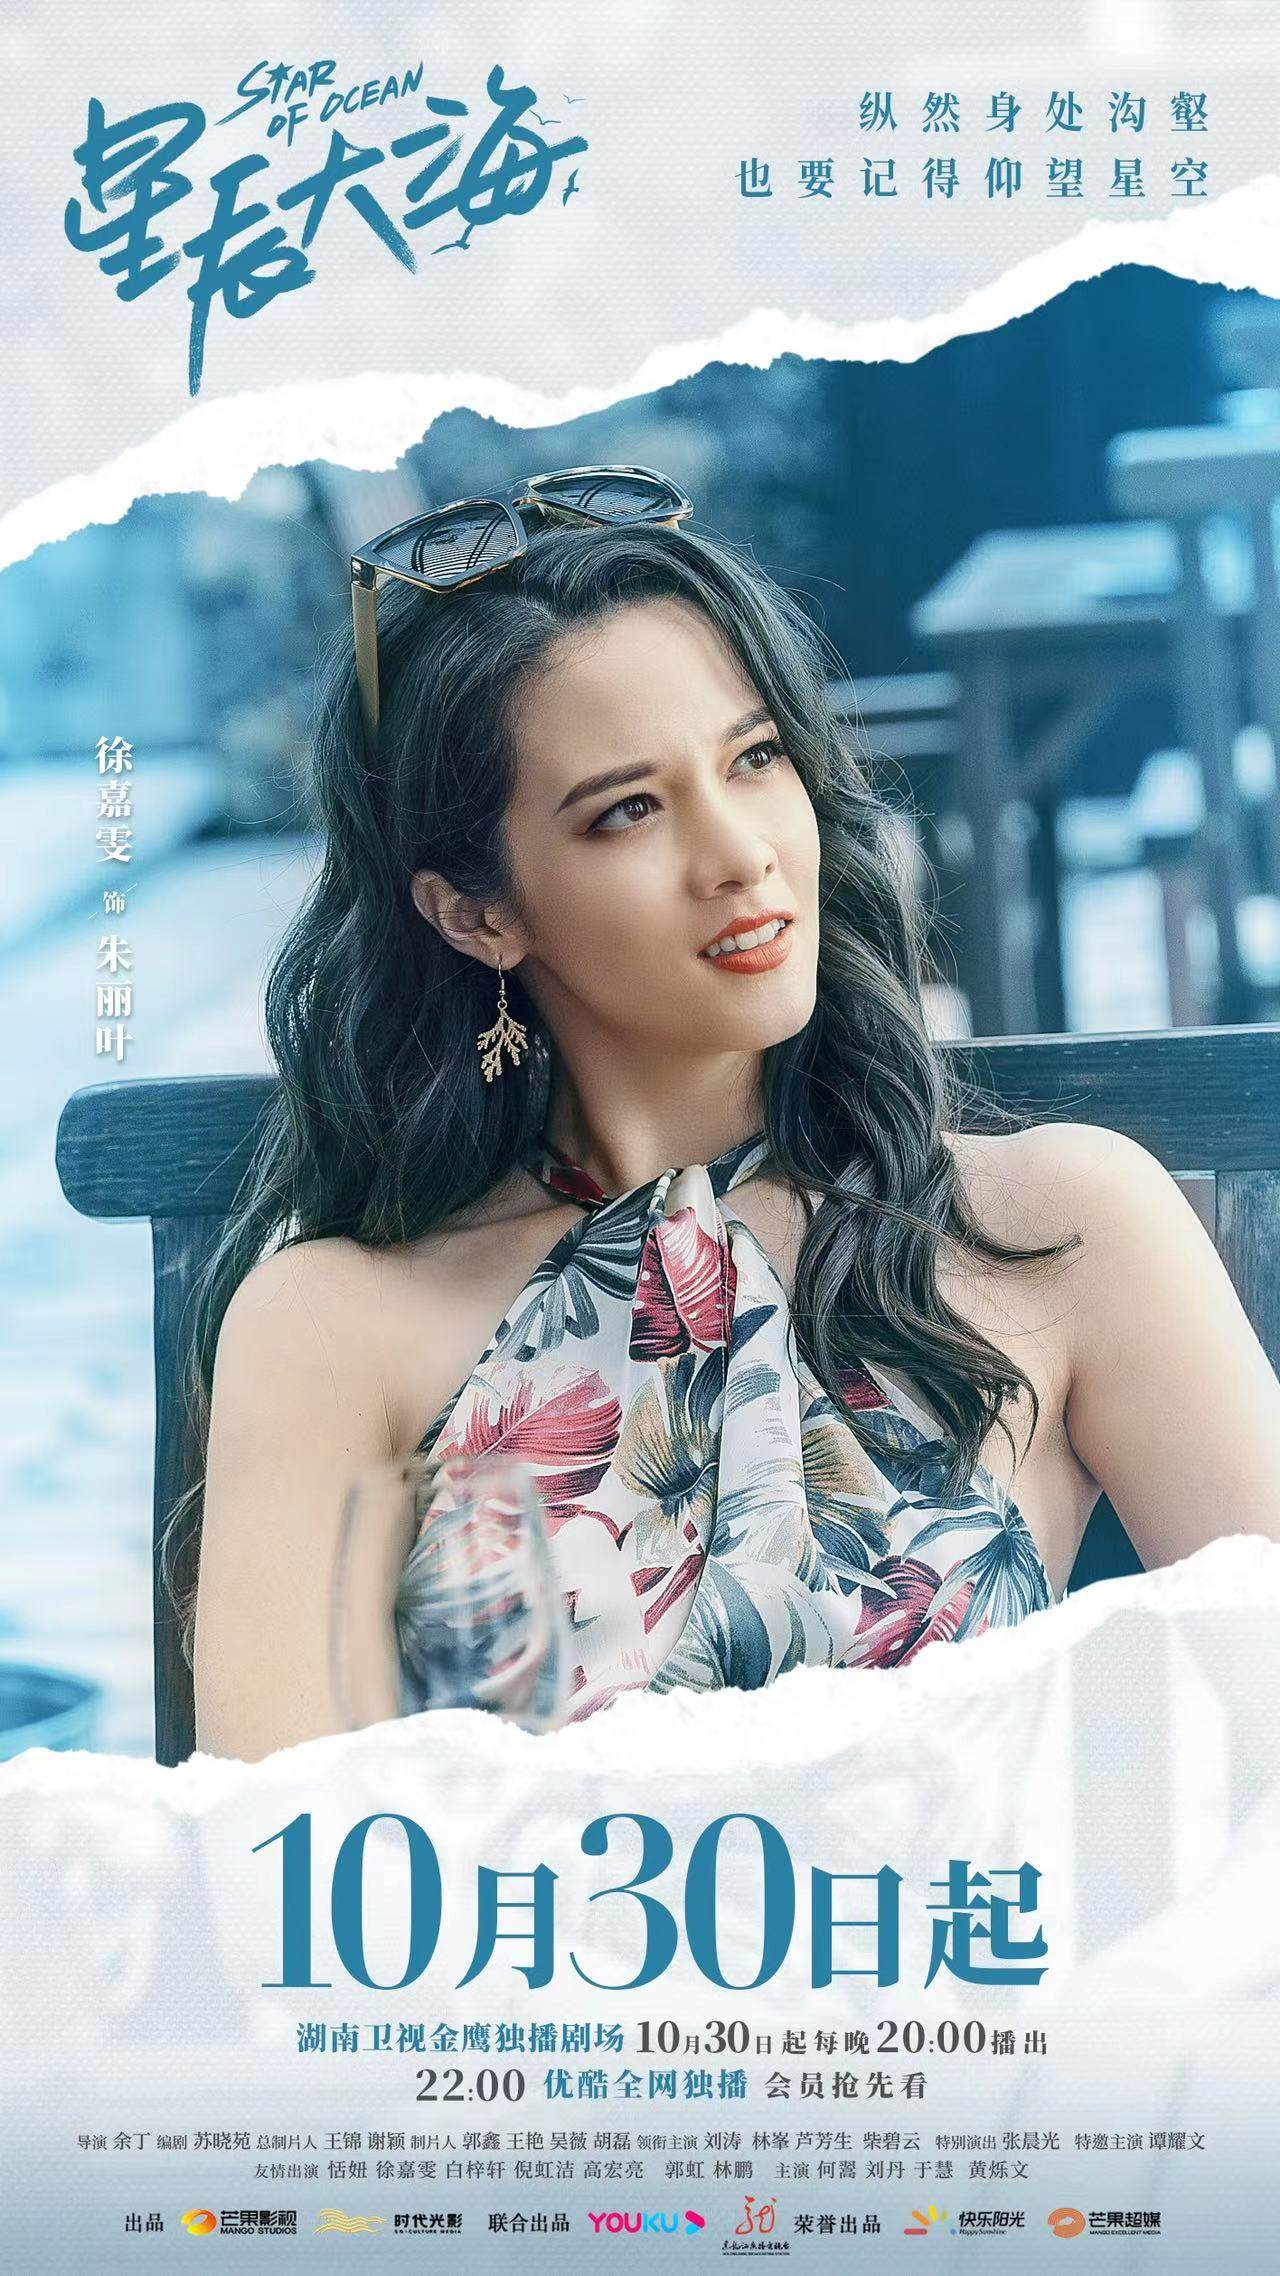 Of ocean chinese drama star [Mainland Chinese